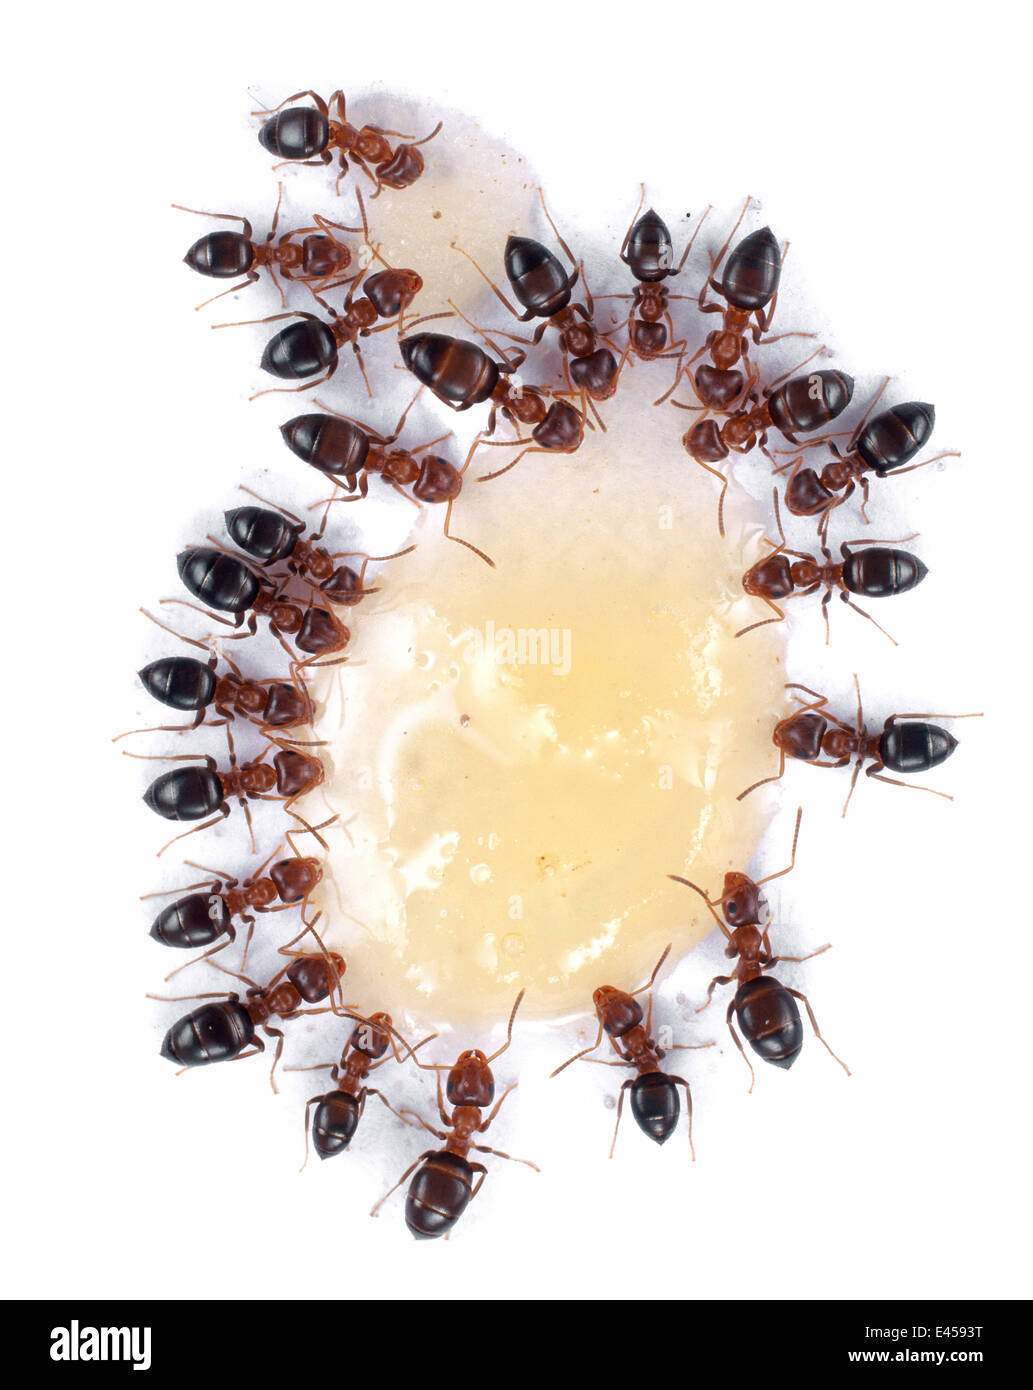 Le formiche (NON IDENTIFICATO) alimentazione sulla fuoriuscita di miele. Regno Unito. Foto Stock